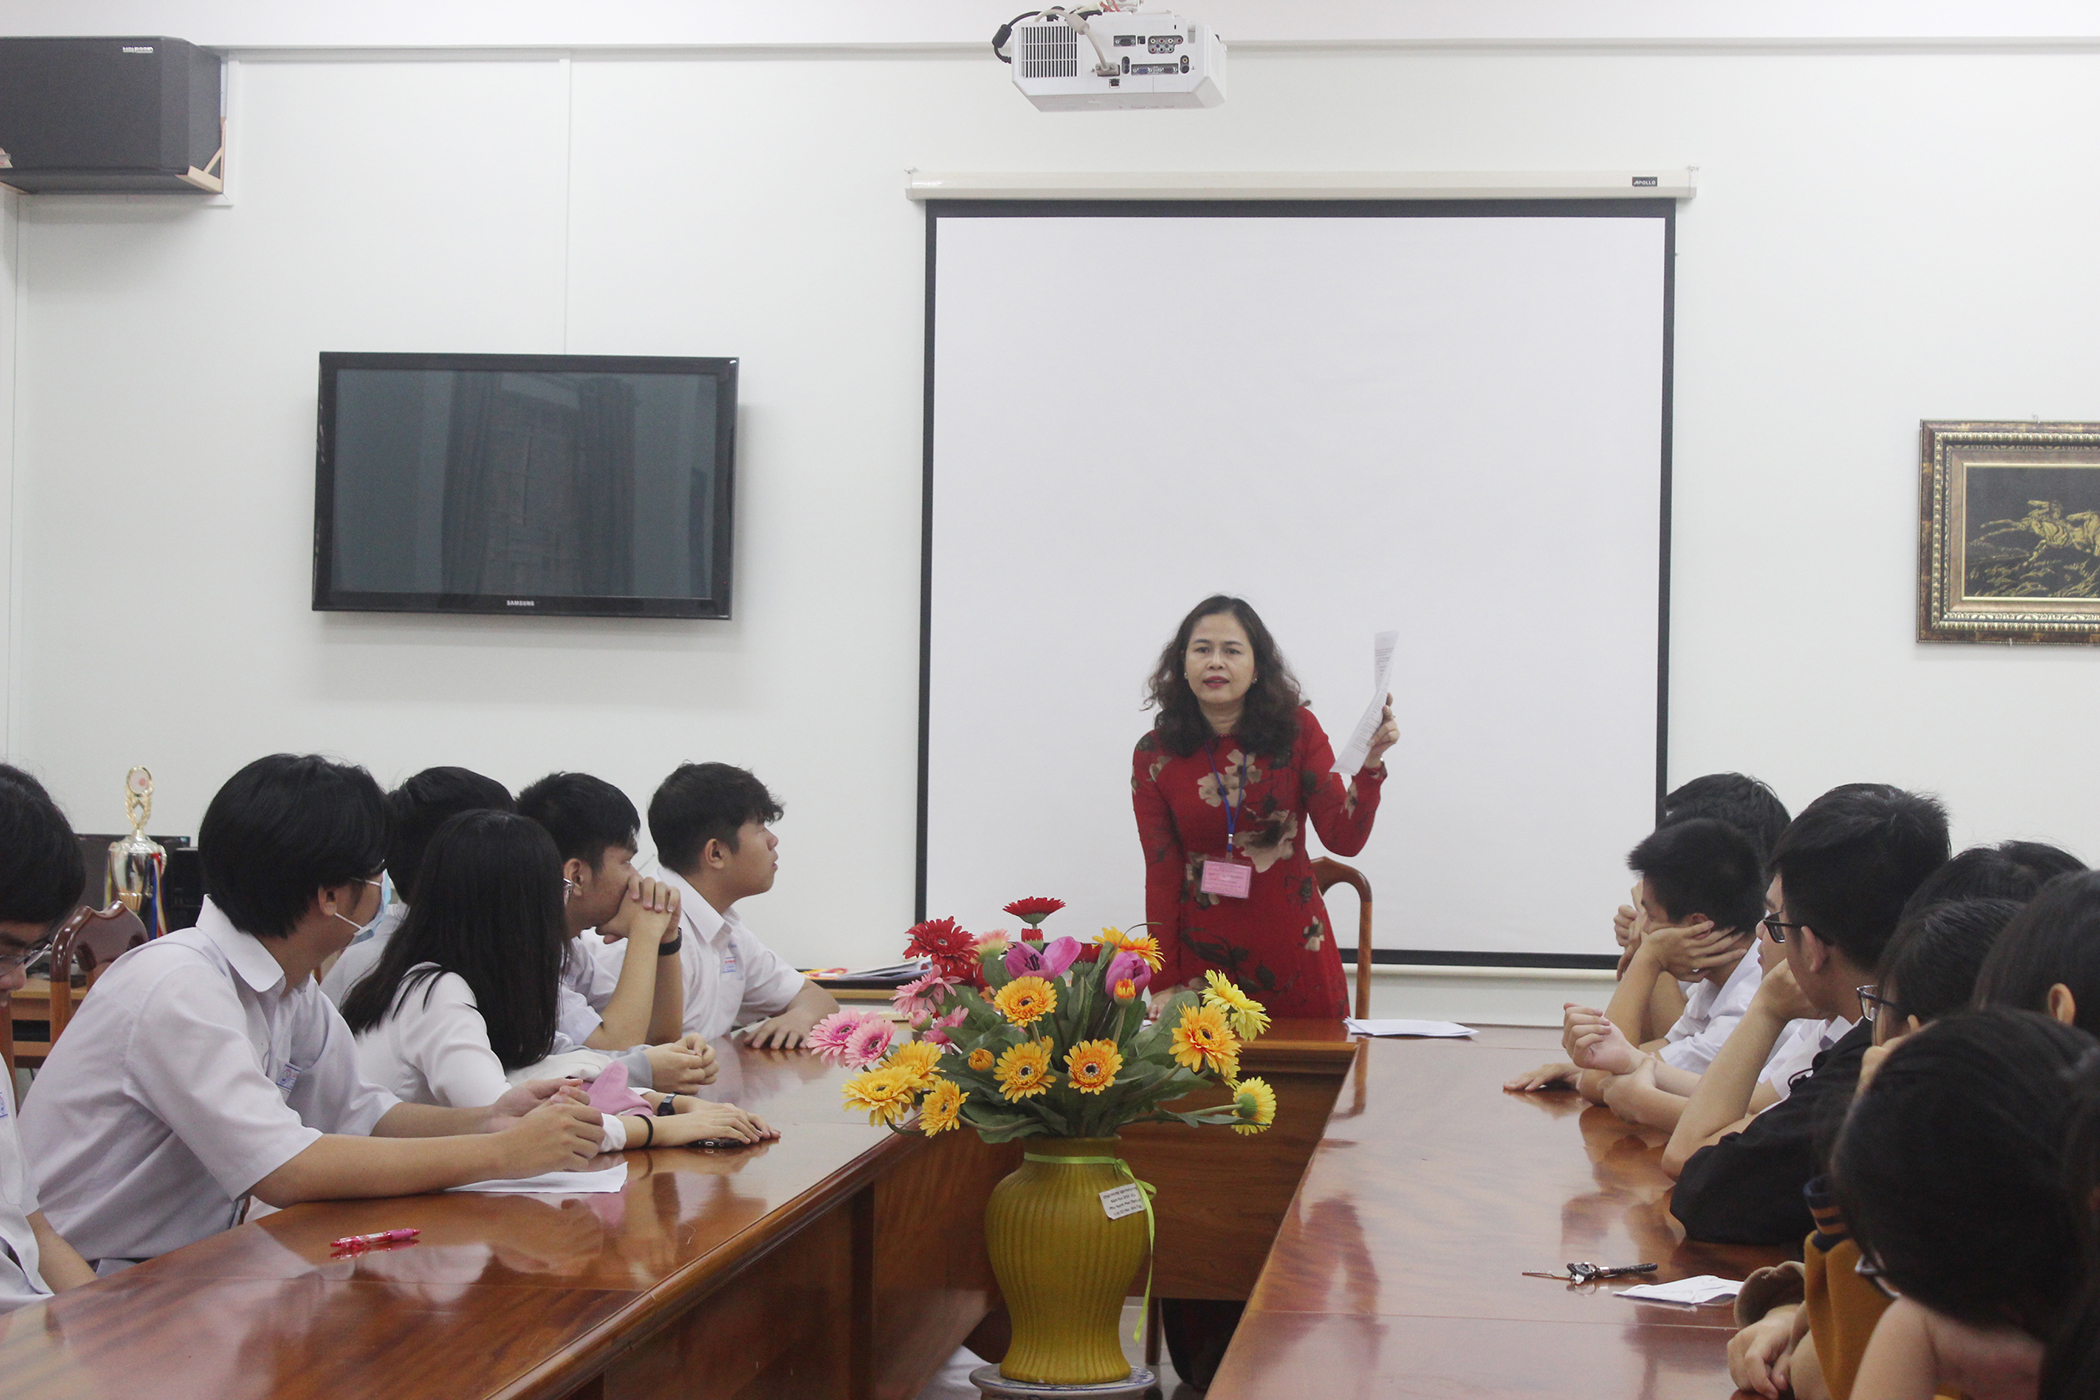 Bà Lữ Thị Trà Giang, Hiệu trưởng Trường THPT chuyên Lê Quý Đôn phổ biến quy chế thi cho các thí sinh tham dự kỳ thi năm nay.